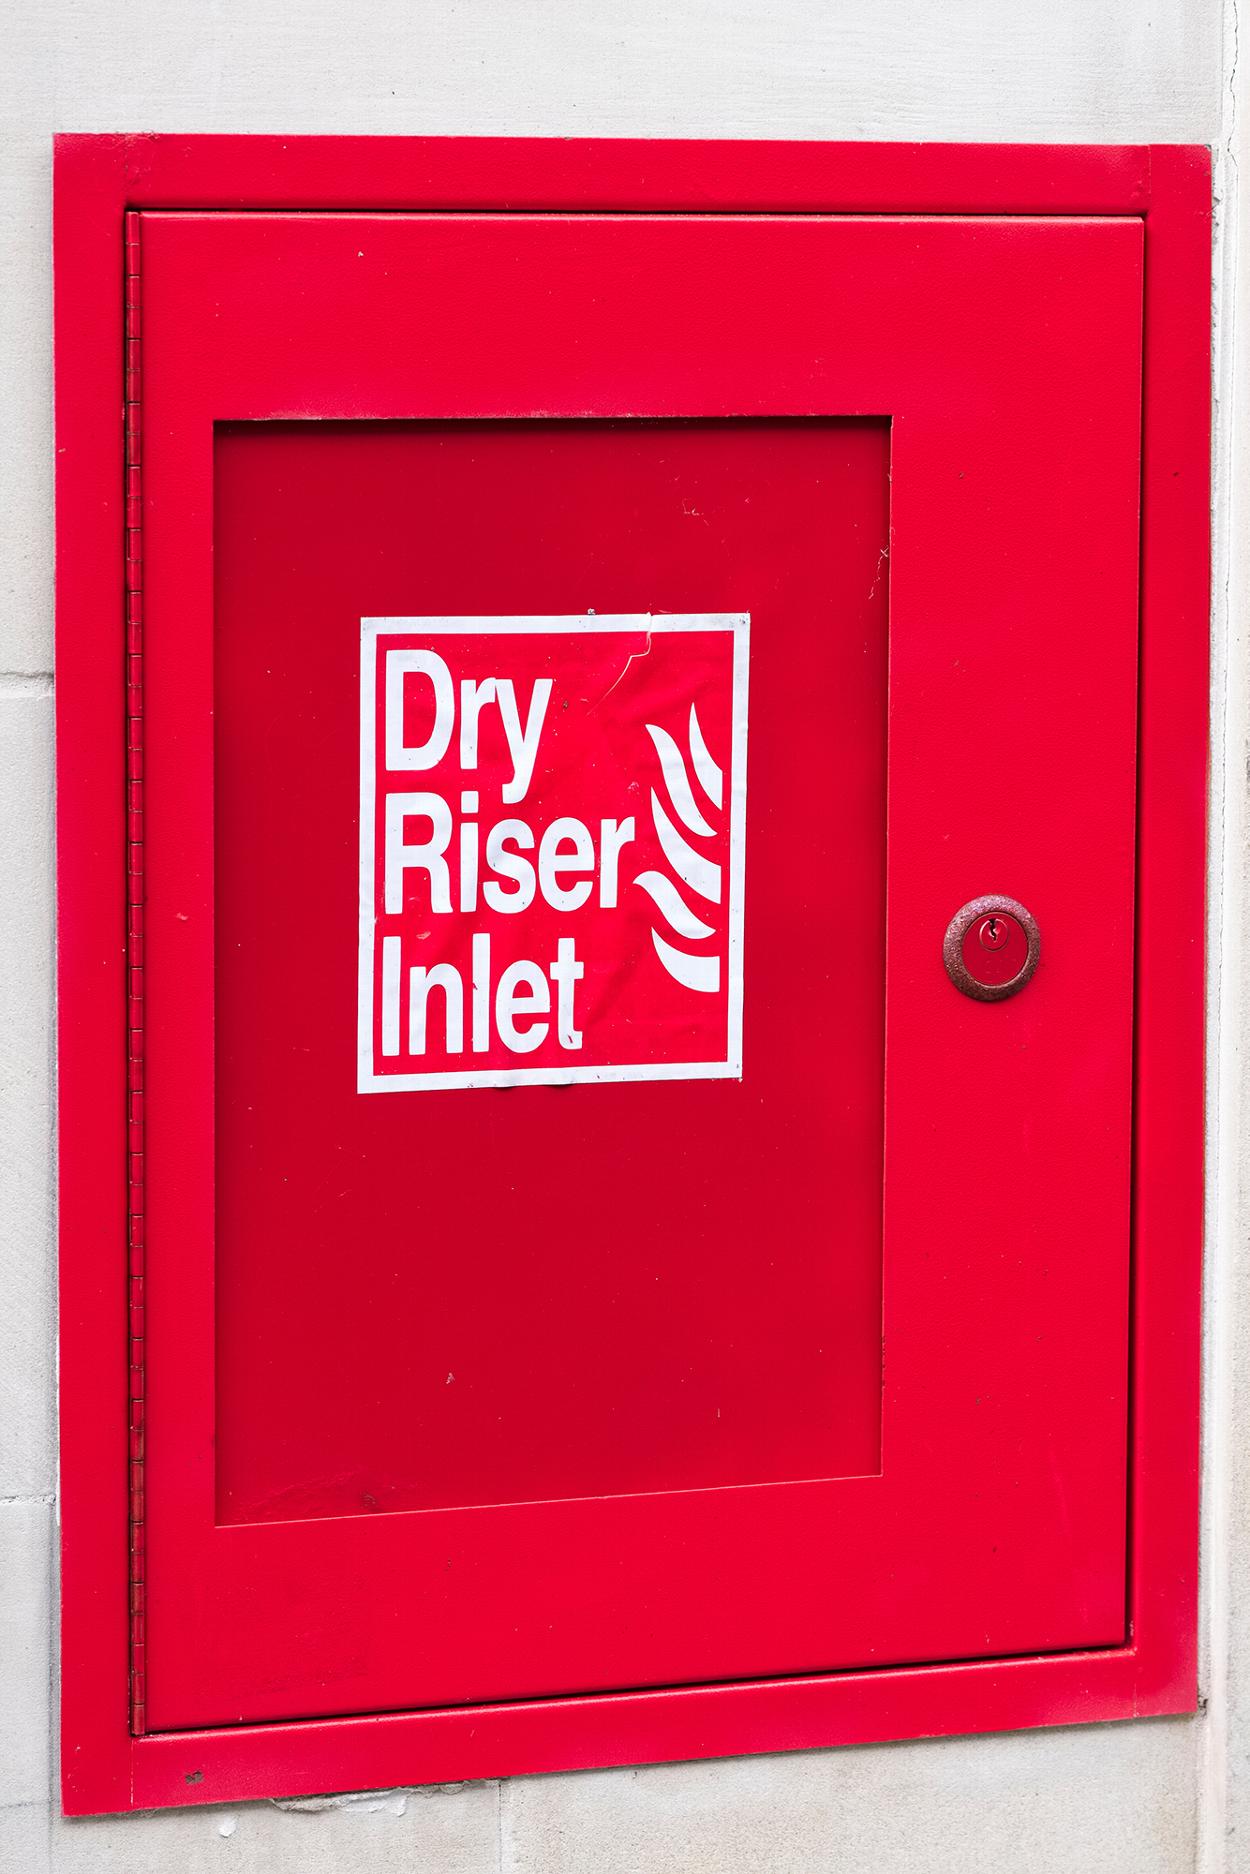 Dry riser inlet door